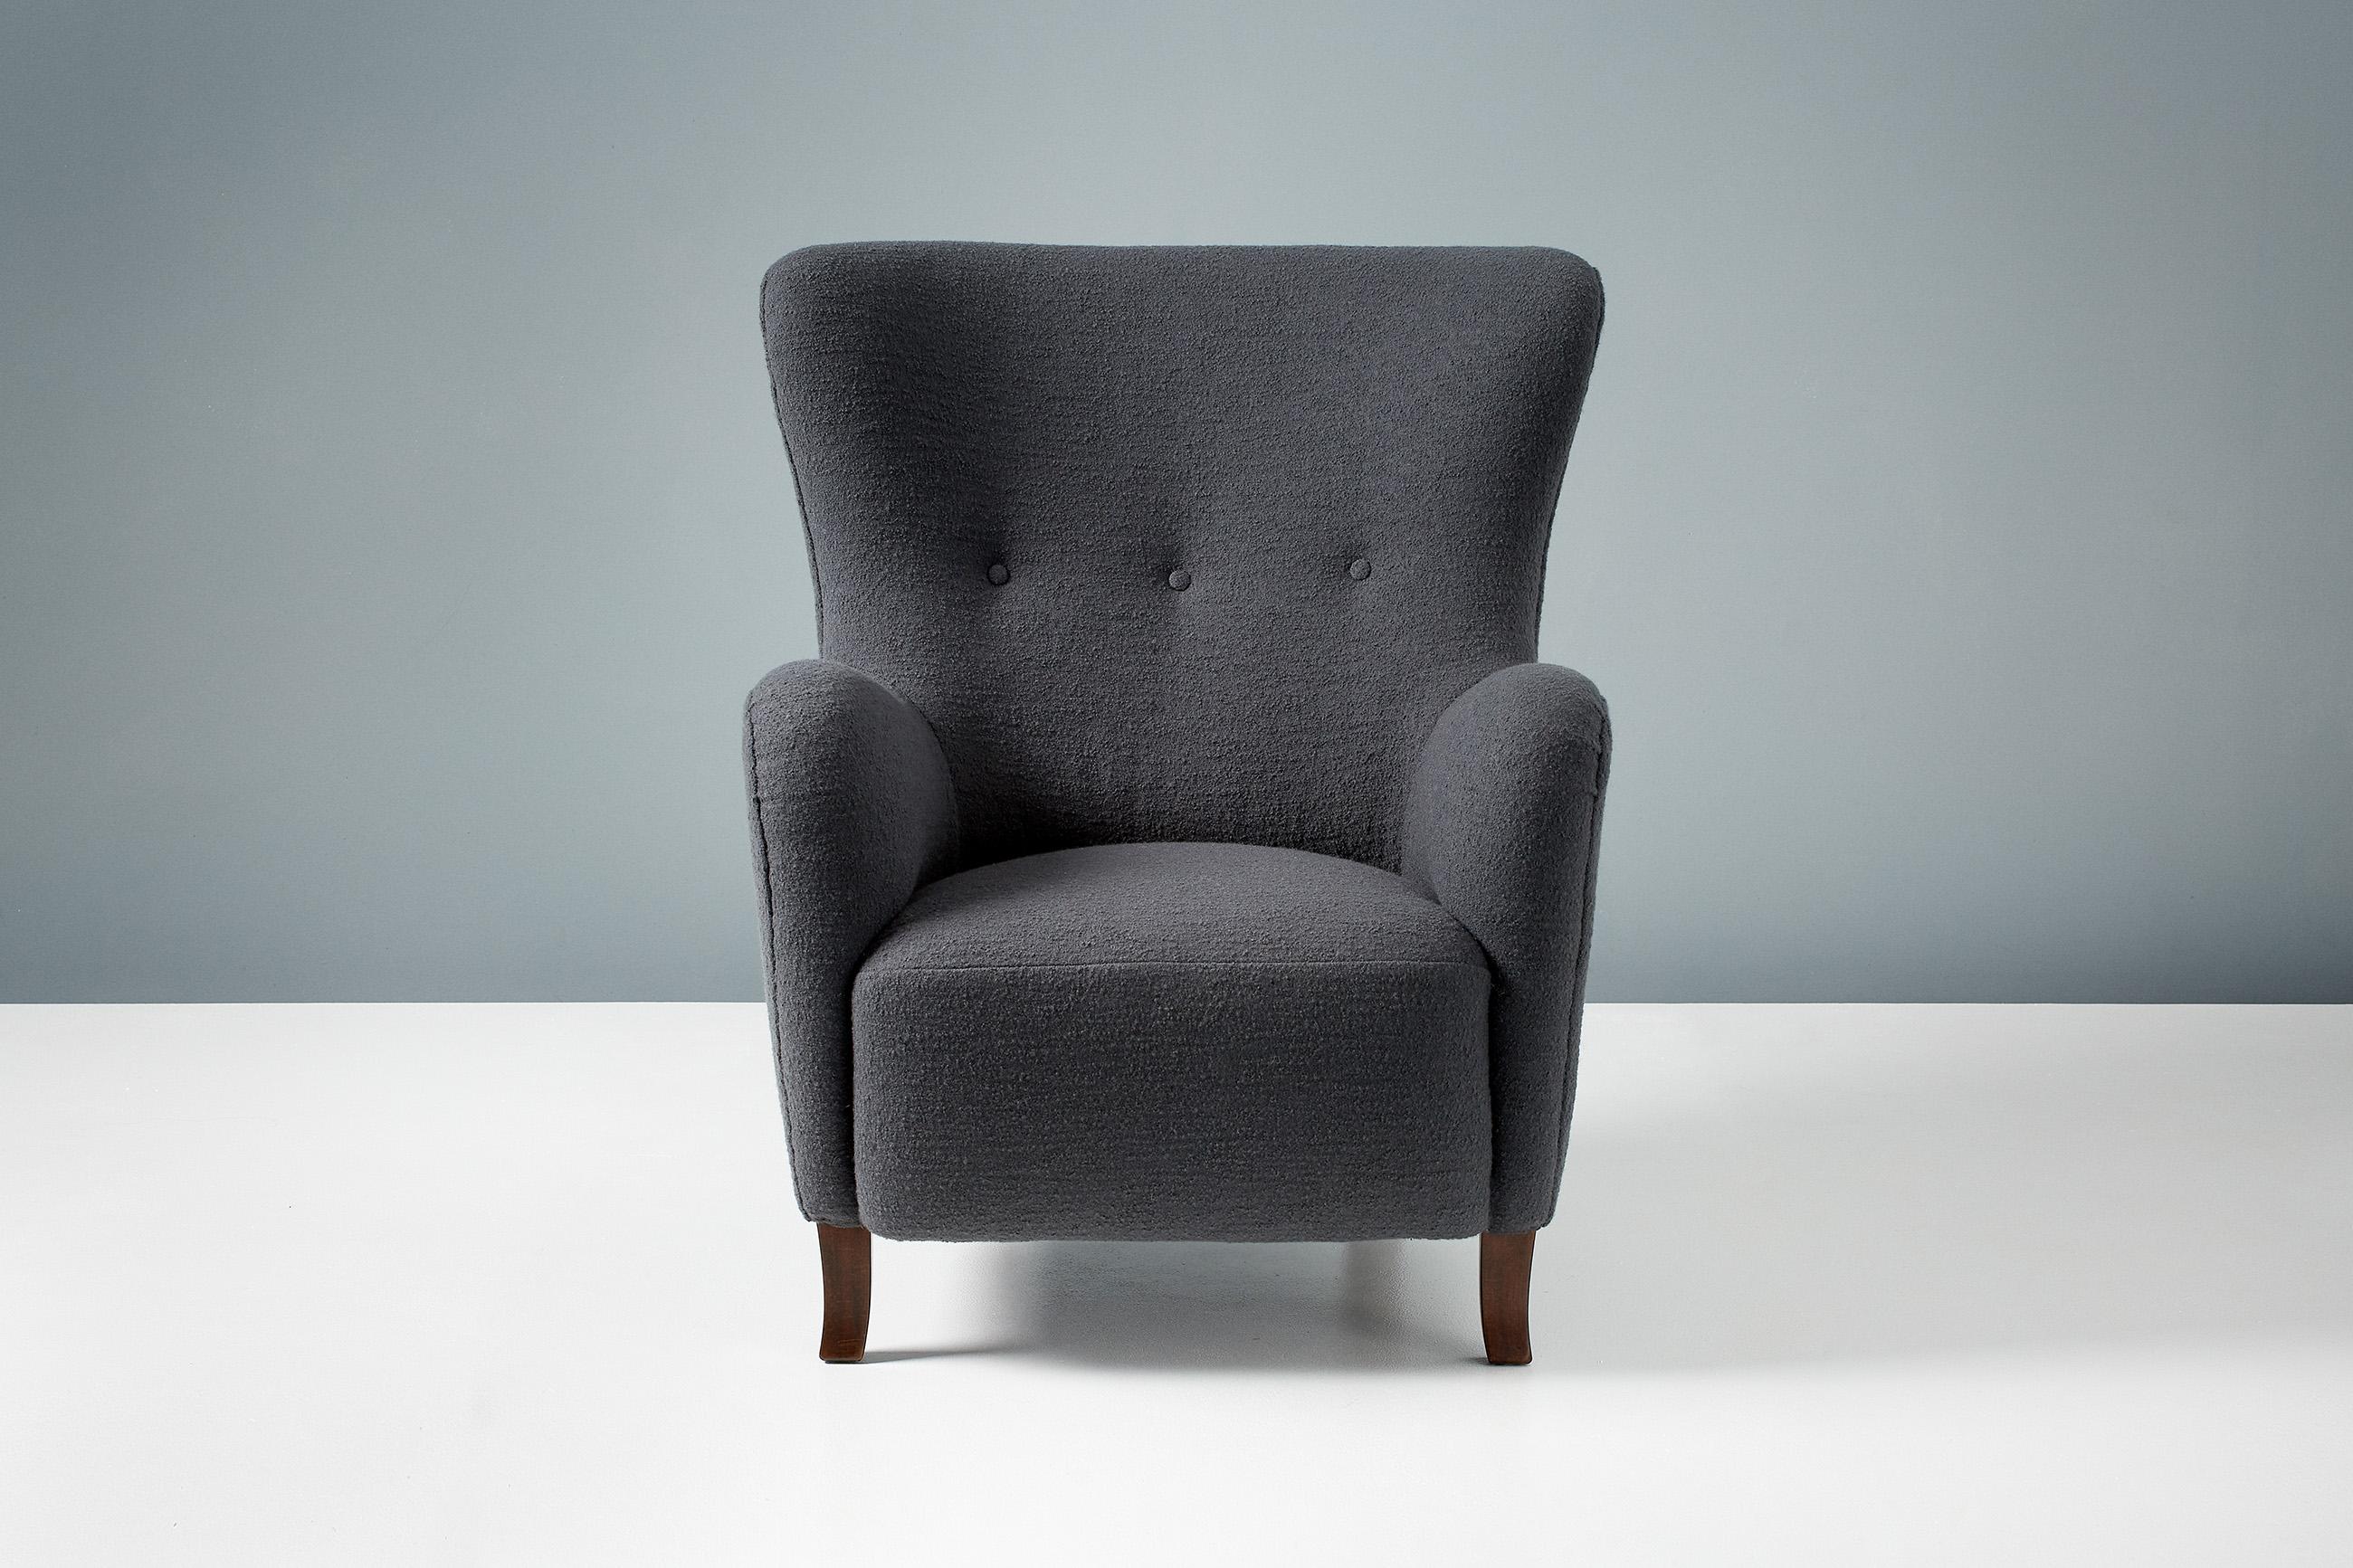 Design/One

Chaise à oreilles Sampo

Un fauteuil à oreilles sur mesure développé et produit dans nos ateliers de Londres à l'aide de matériaux de la plus haute qualité. Le cadre est fabriqué en bois de tulipier massif et l'assise est entièrement